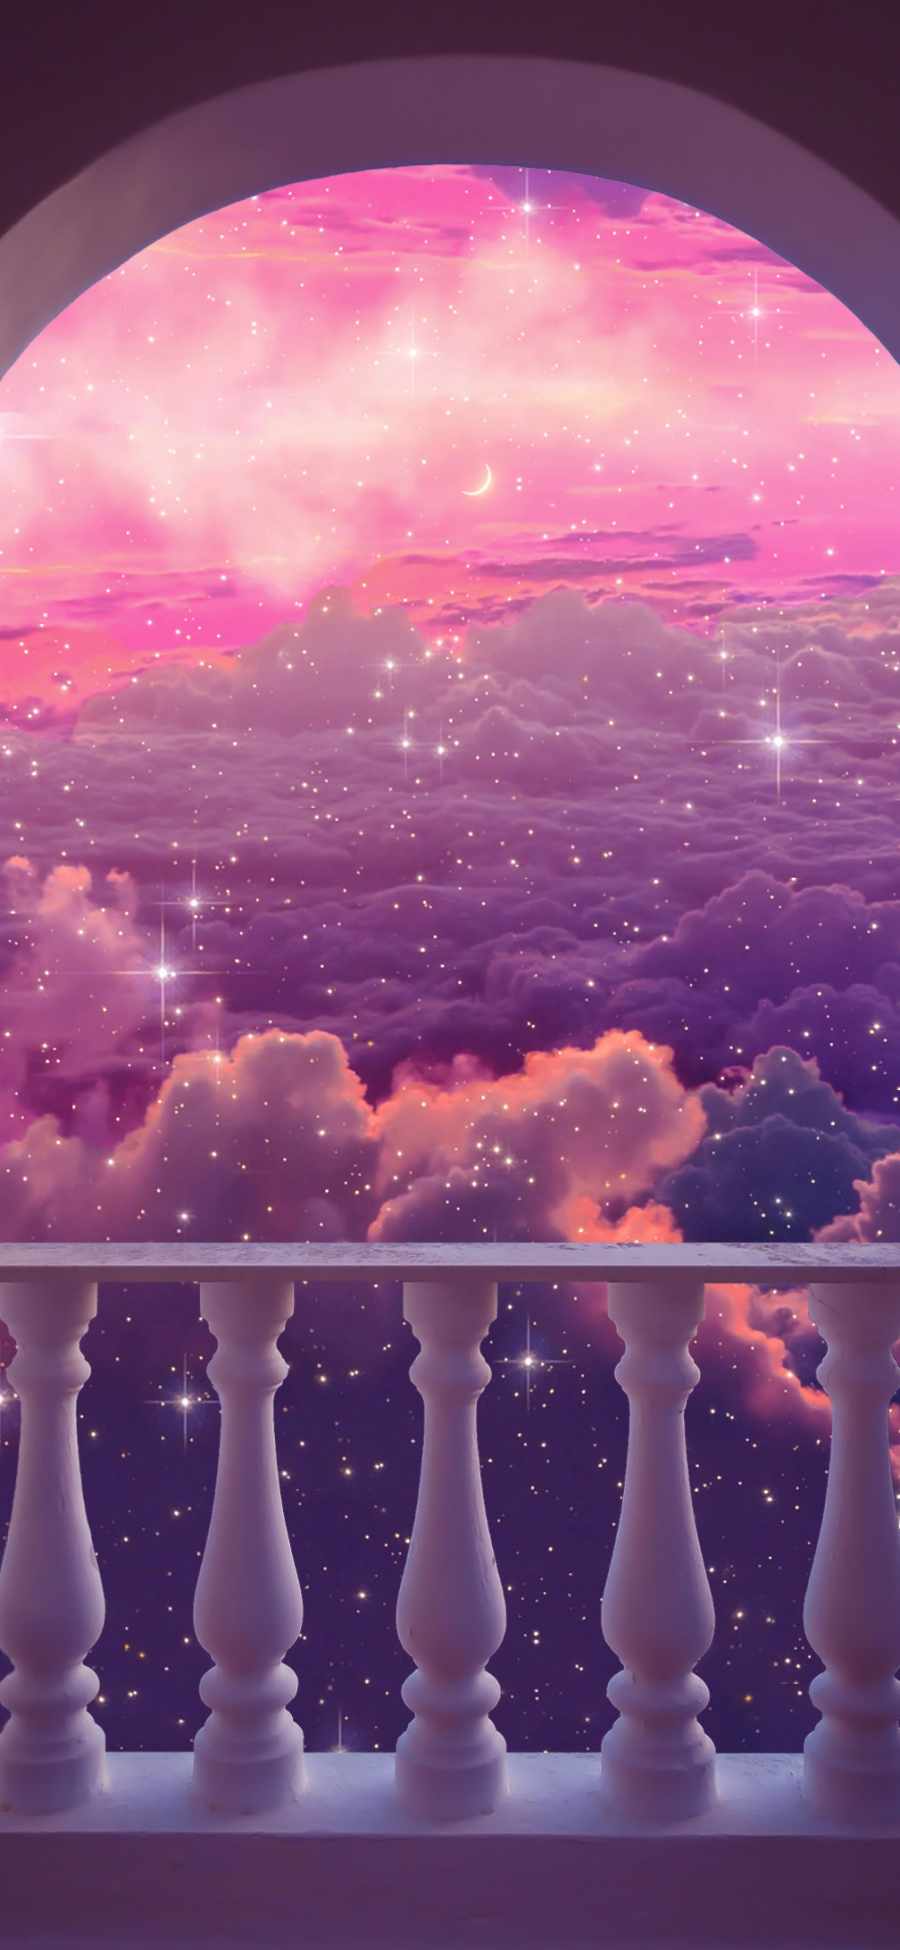 Pink Dreamscape iPhone Wallpaper HD